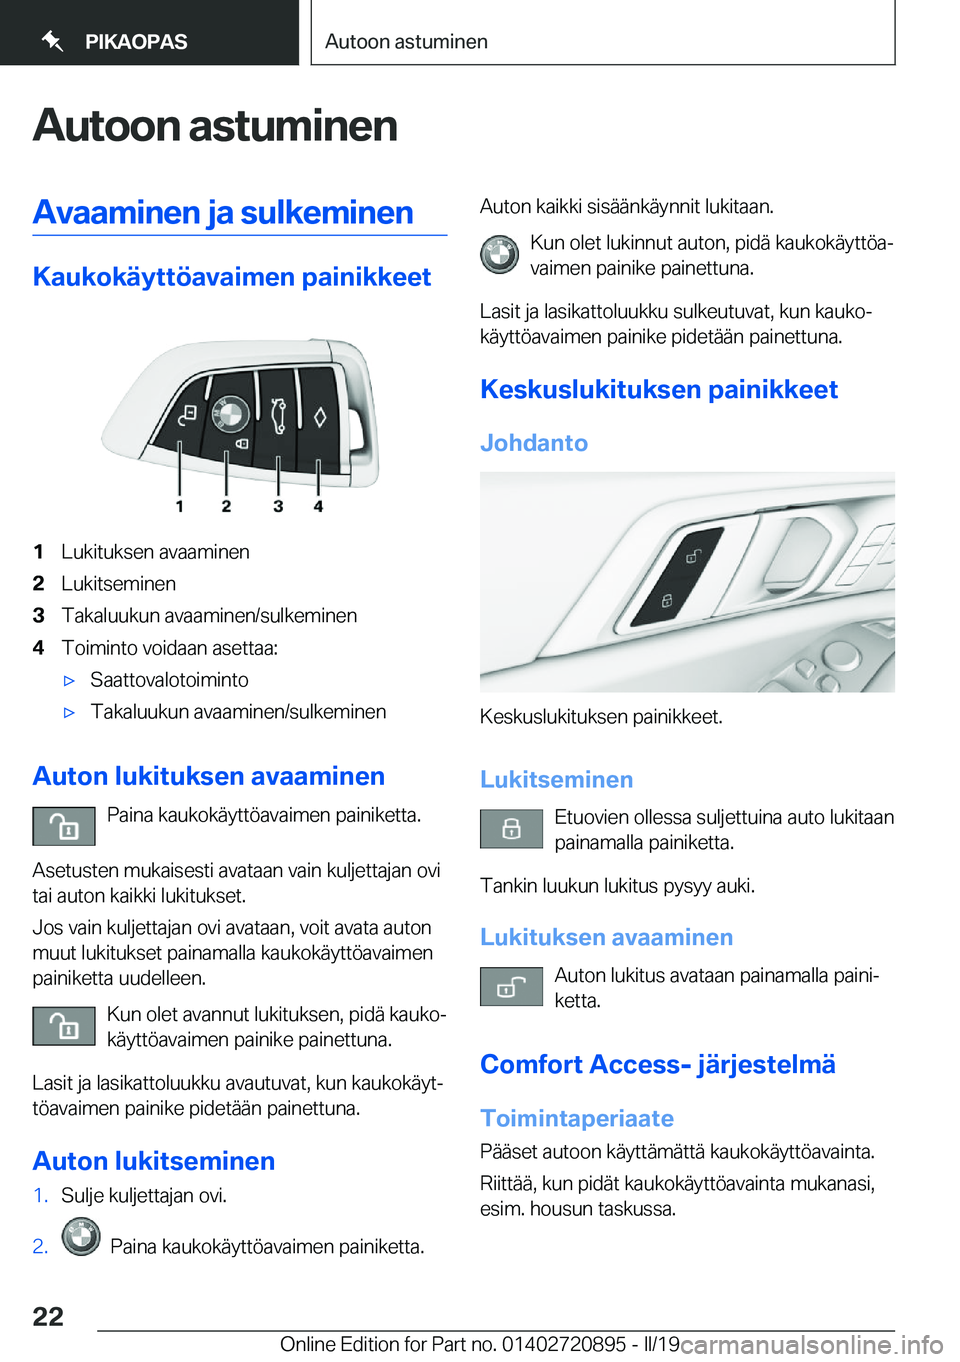 BMW X7 2019  Omistajan Käsikirja (in Finnish) �A�u�t�o�o�n��a�s�t�u�m�i�n�e�n�A�v�a�a�m�i�n�e�n��j�a��s�u�l�k�e�m�i�n�e�n
�K�a�u�k�o�k�